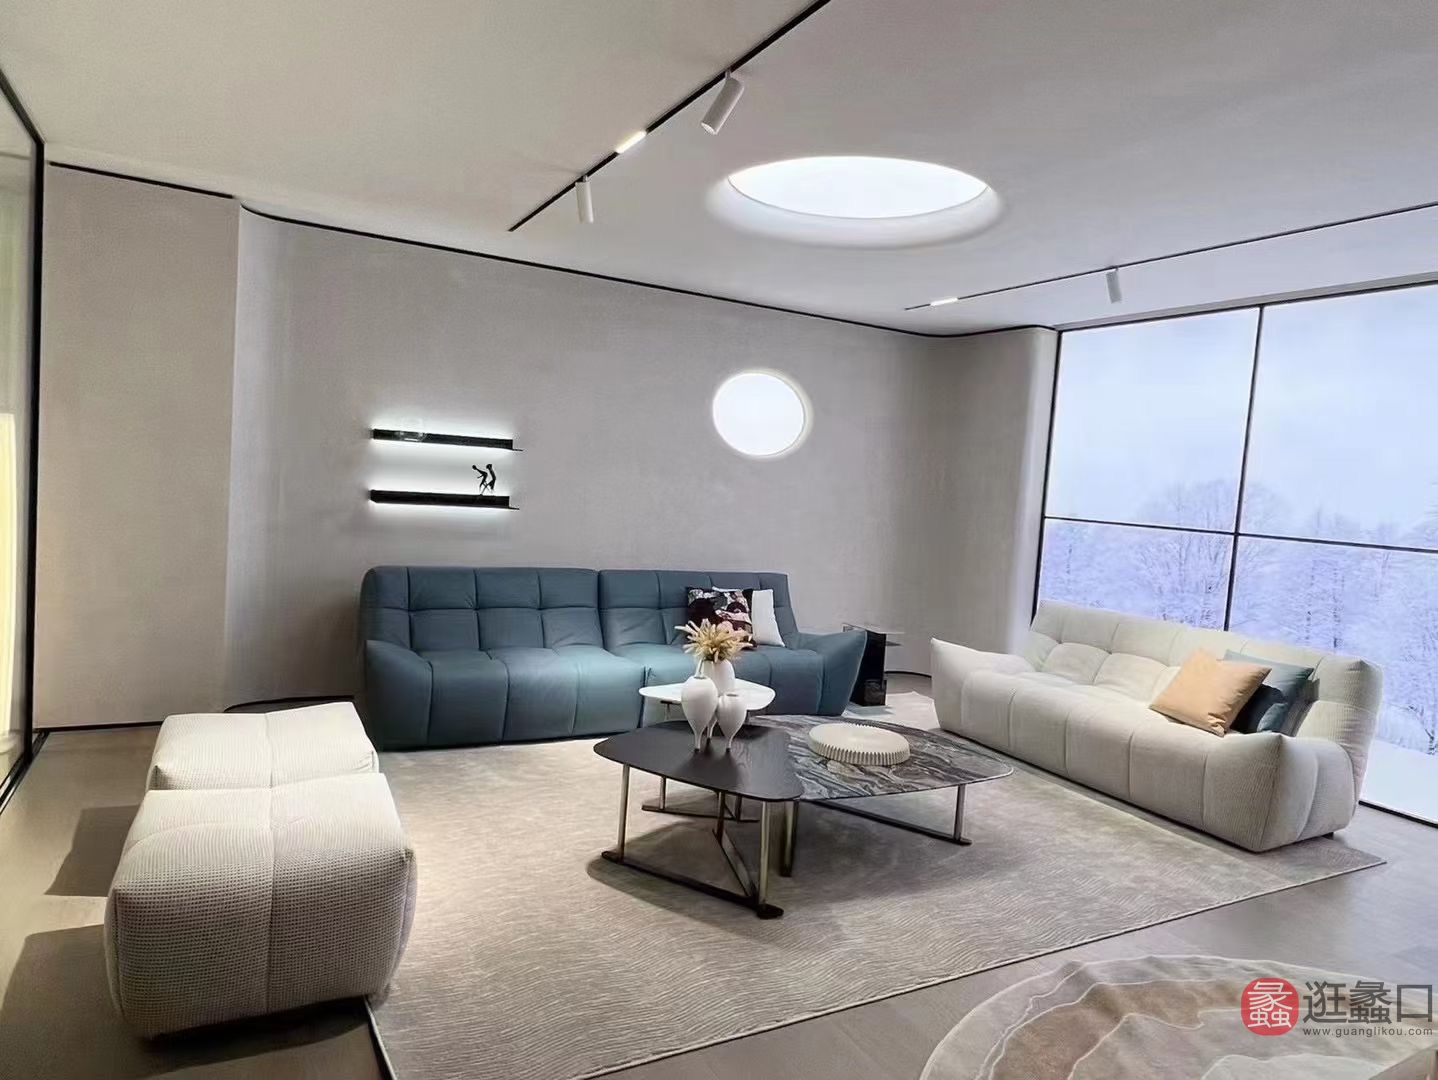 蠡口家具城L&D家居北欧风客厅创意沙发三人位直排设计师款（蓝色）LD011